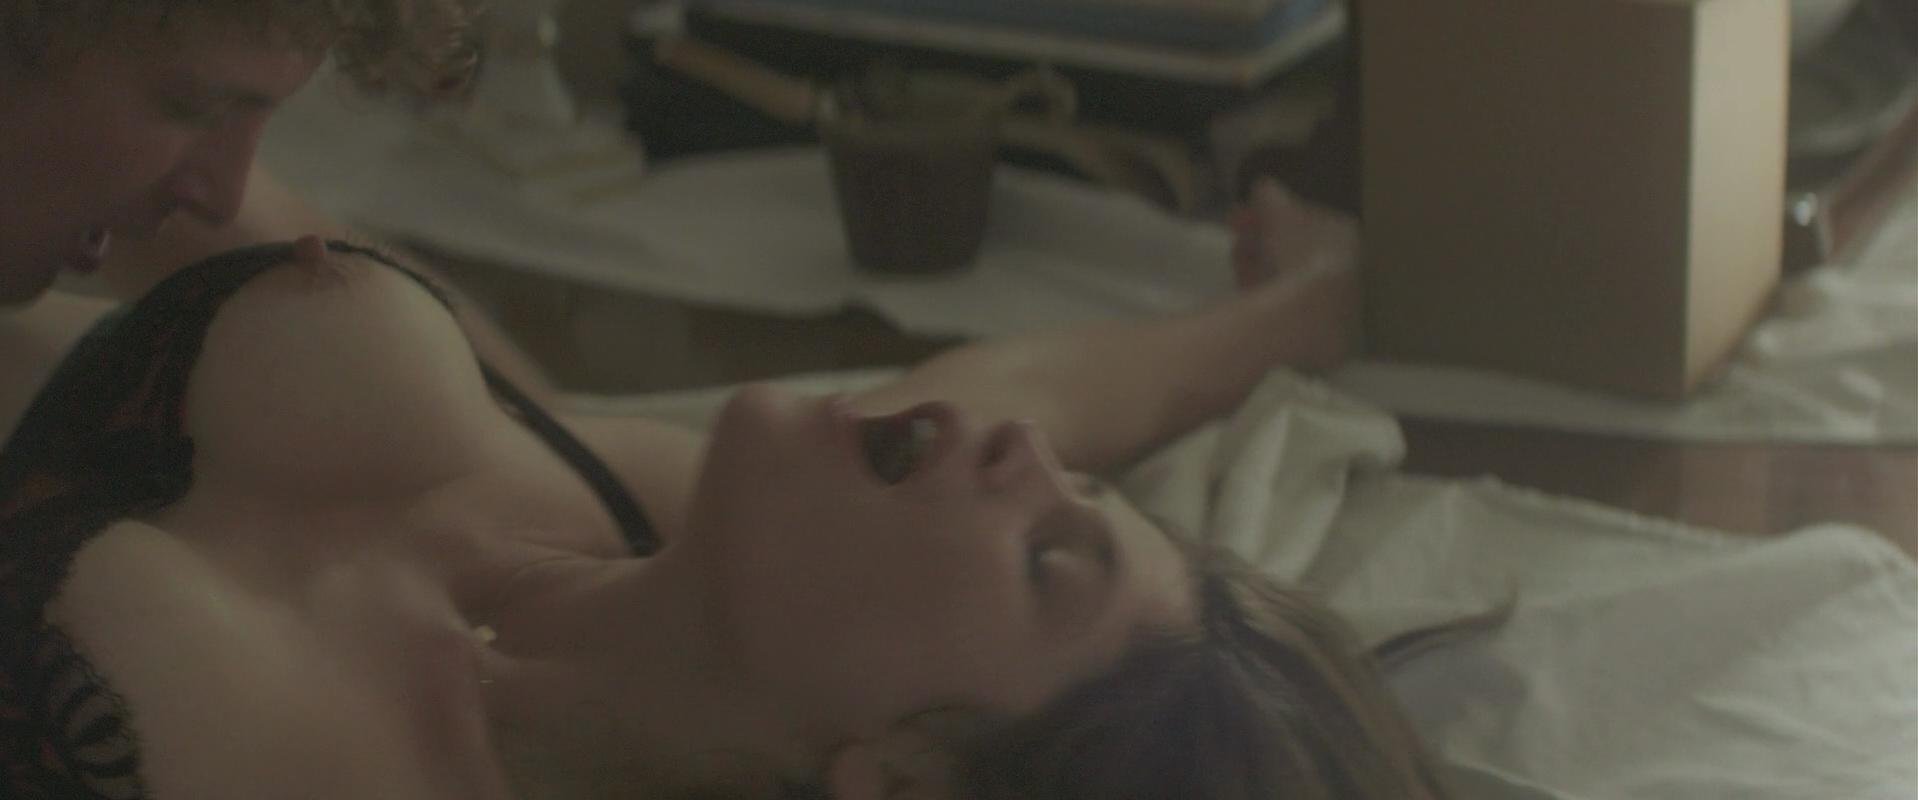 Nude Video Celebs Gemma Arterton Nude Gemma Bovery 2014 4370